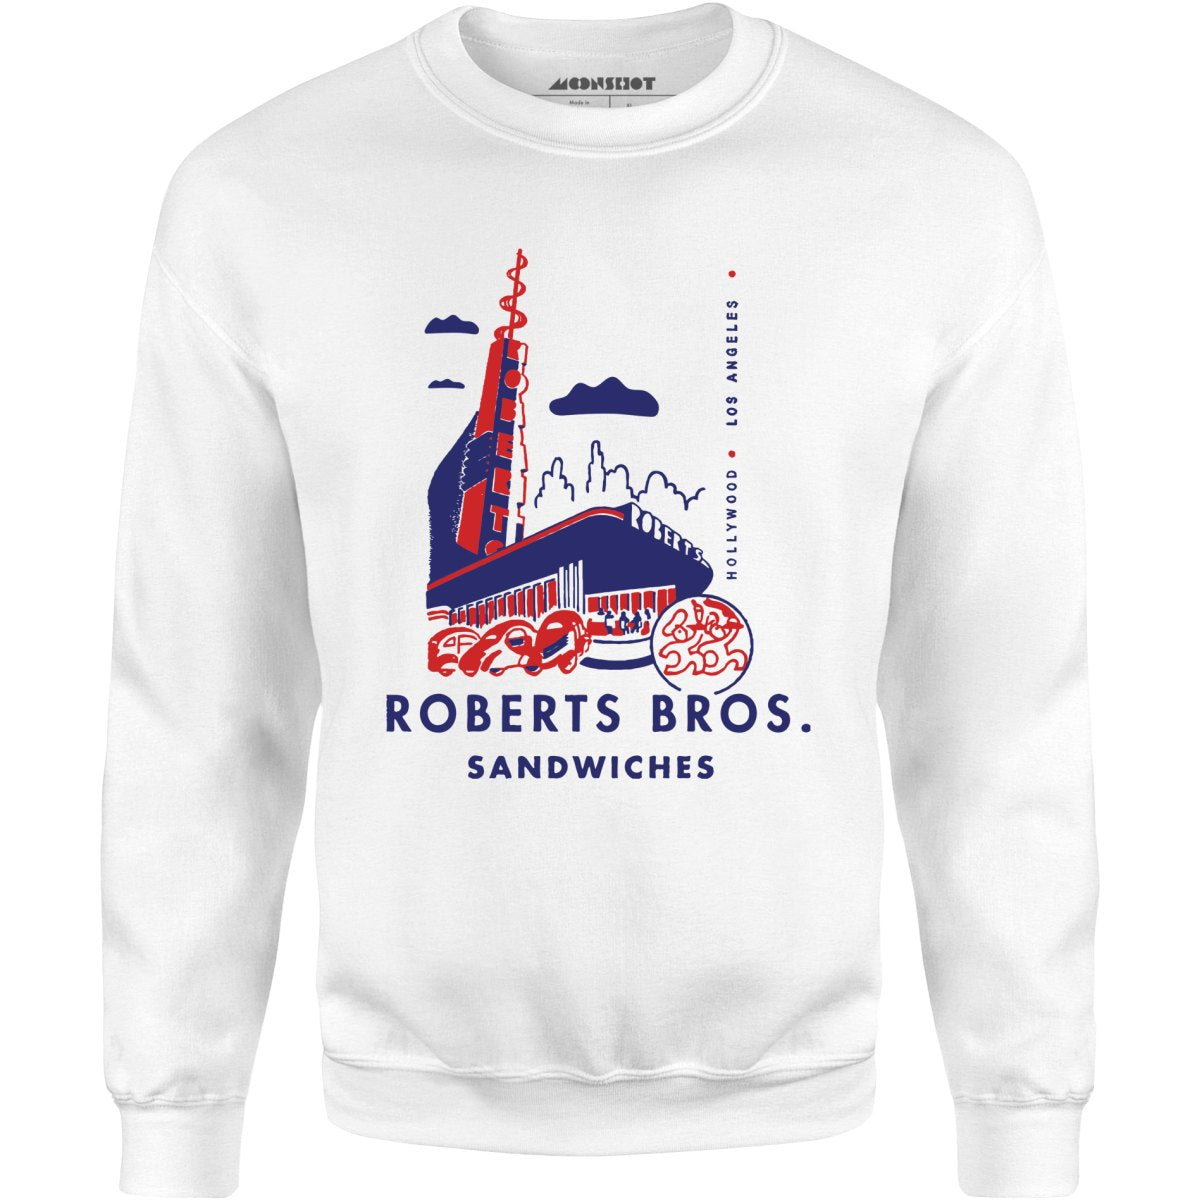 Roberts Bros Sandwiches - Los Angeles, CA - Vintage Restaurant - Unisex Sweatshirt